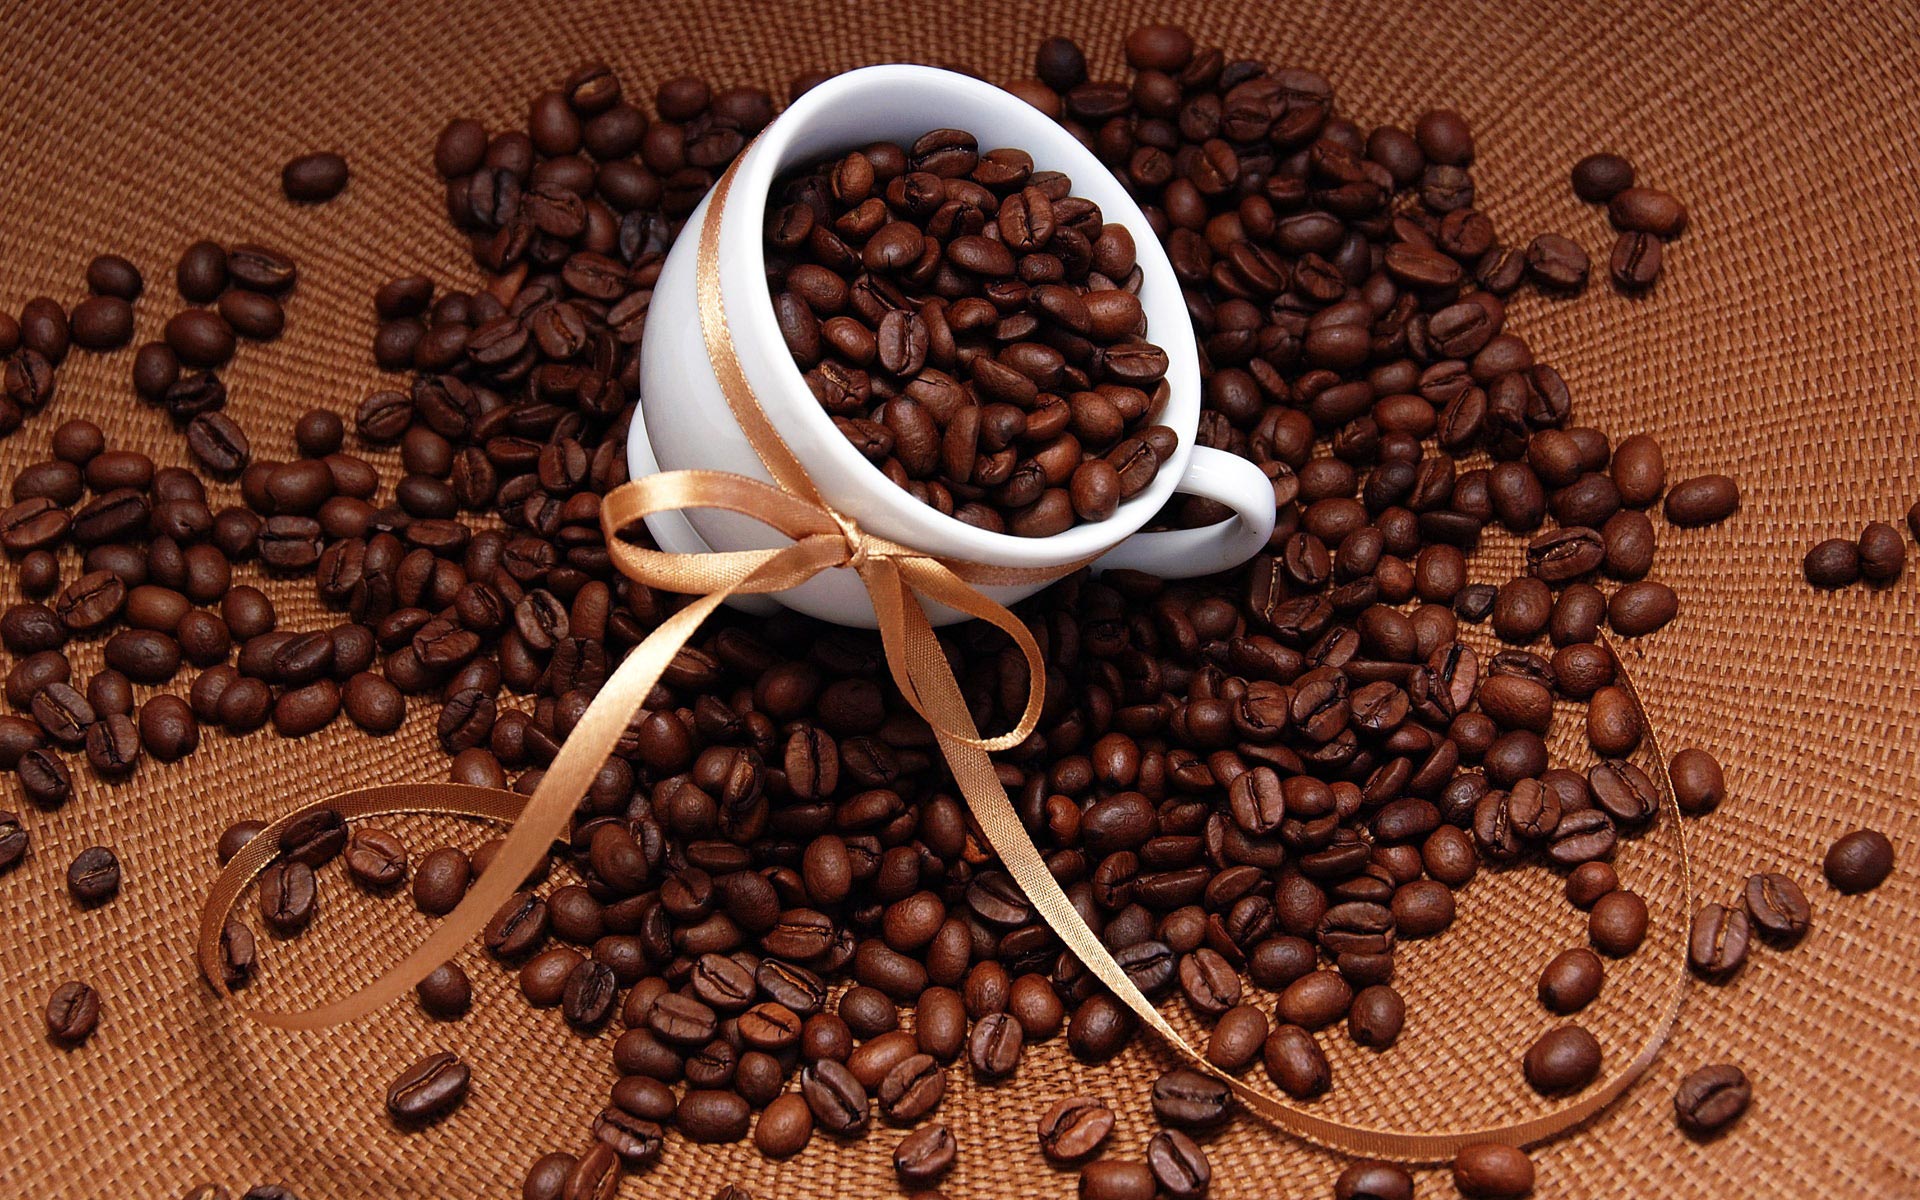 Tổng hợp toàn bộ chất có trong hạt cà phê